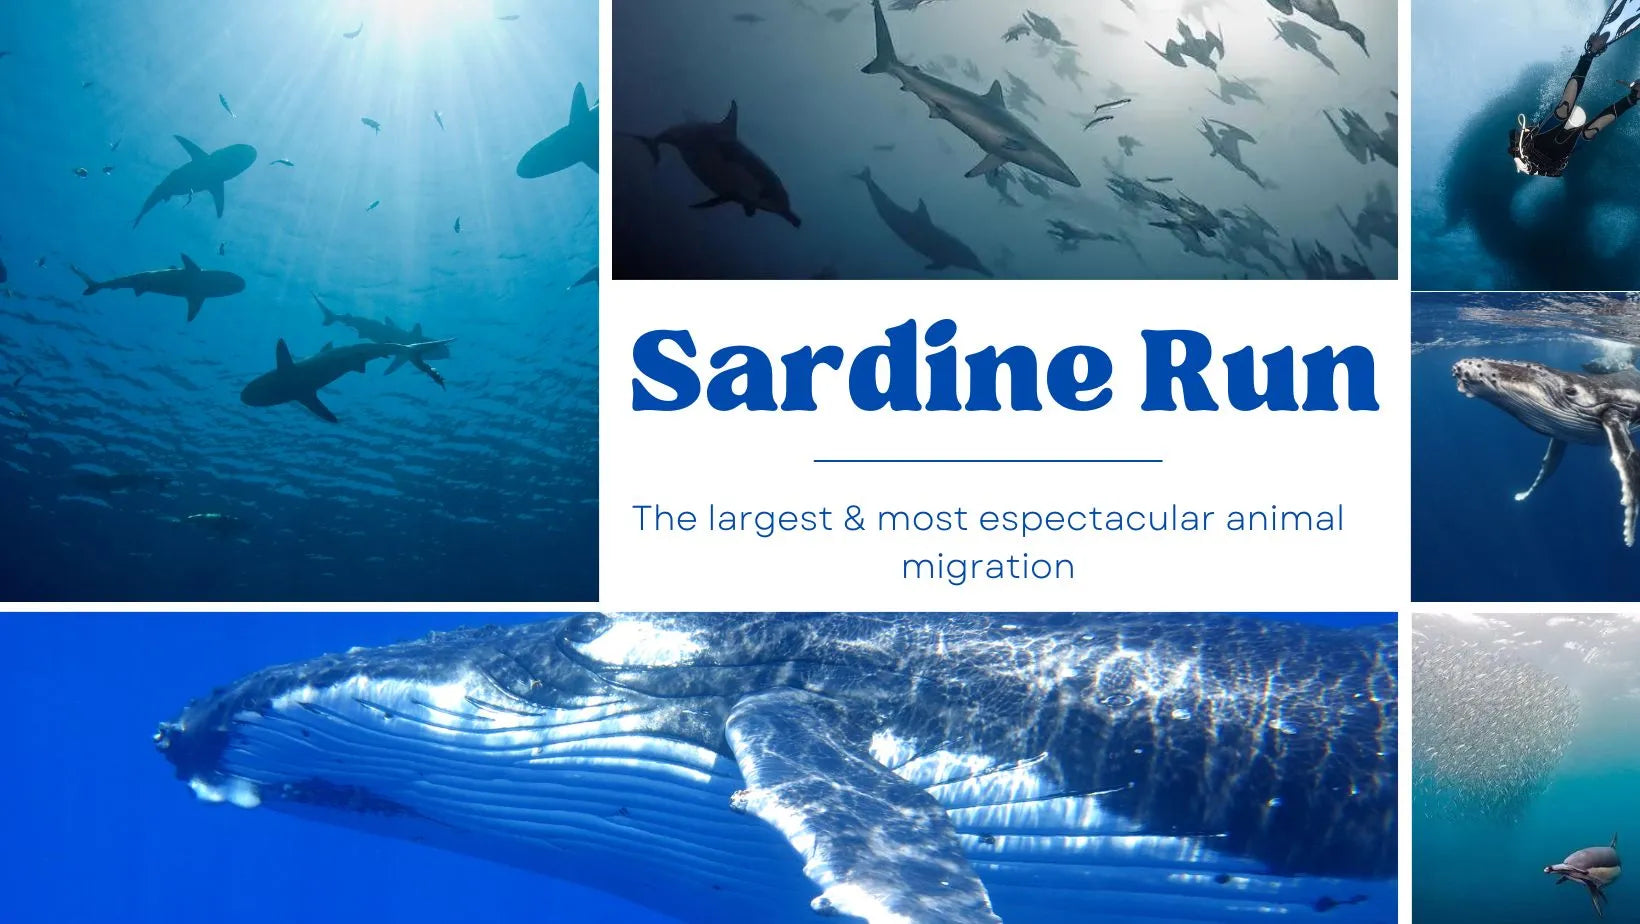 Sumérgete en la Sardine Run, una de las mayores y más espectaculares migraciones animales